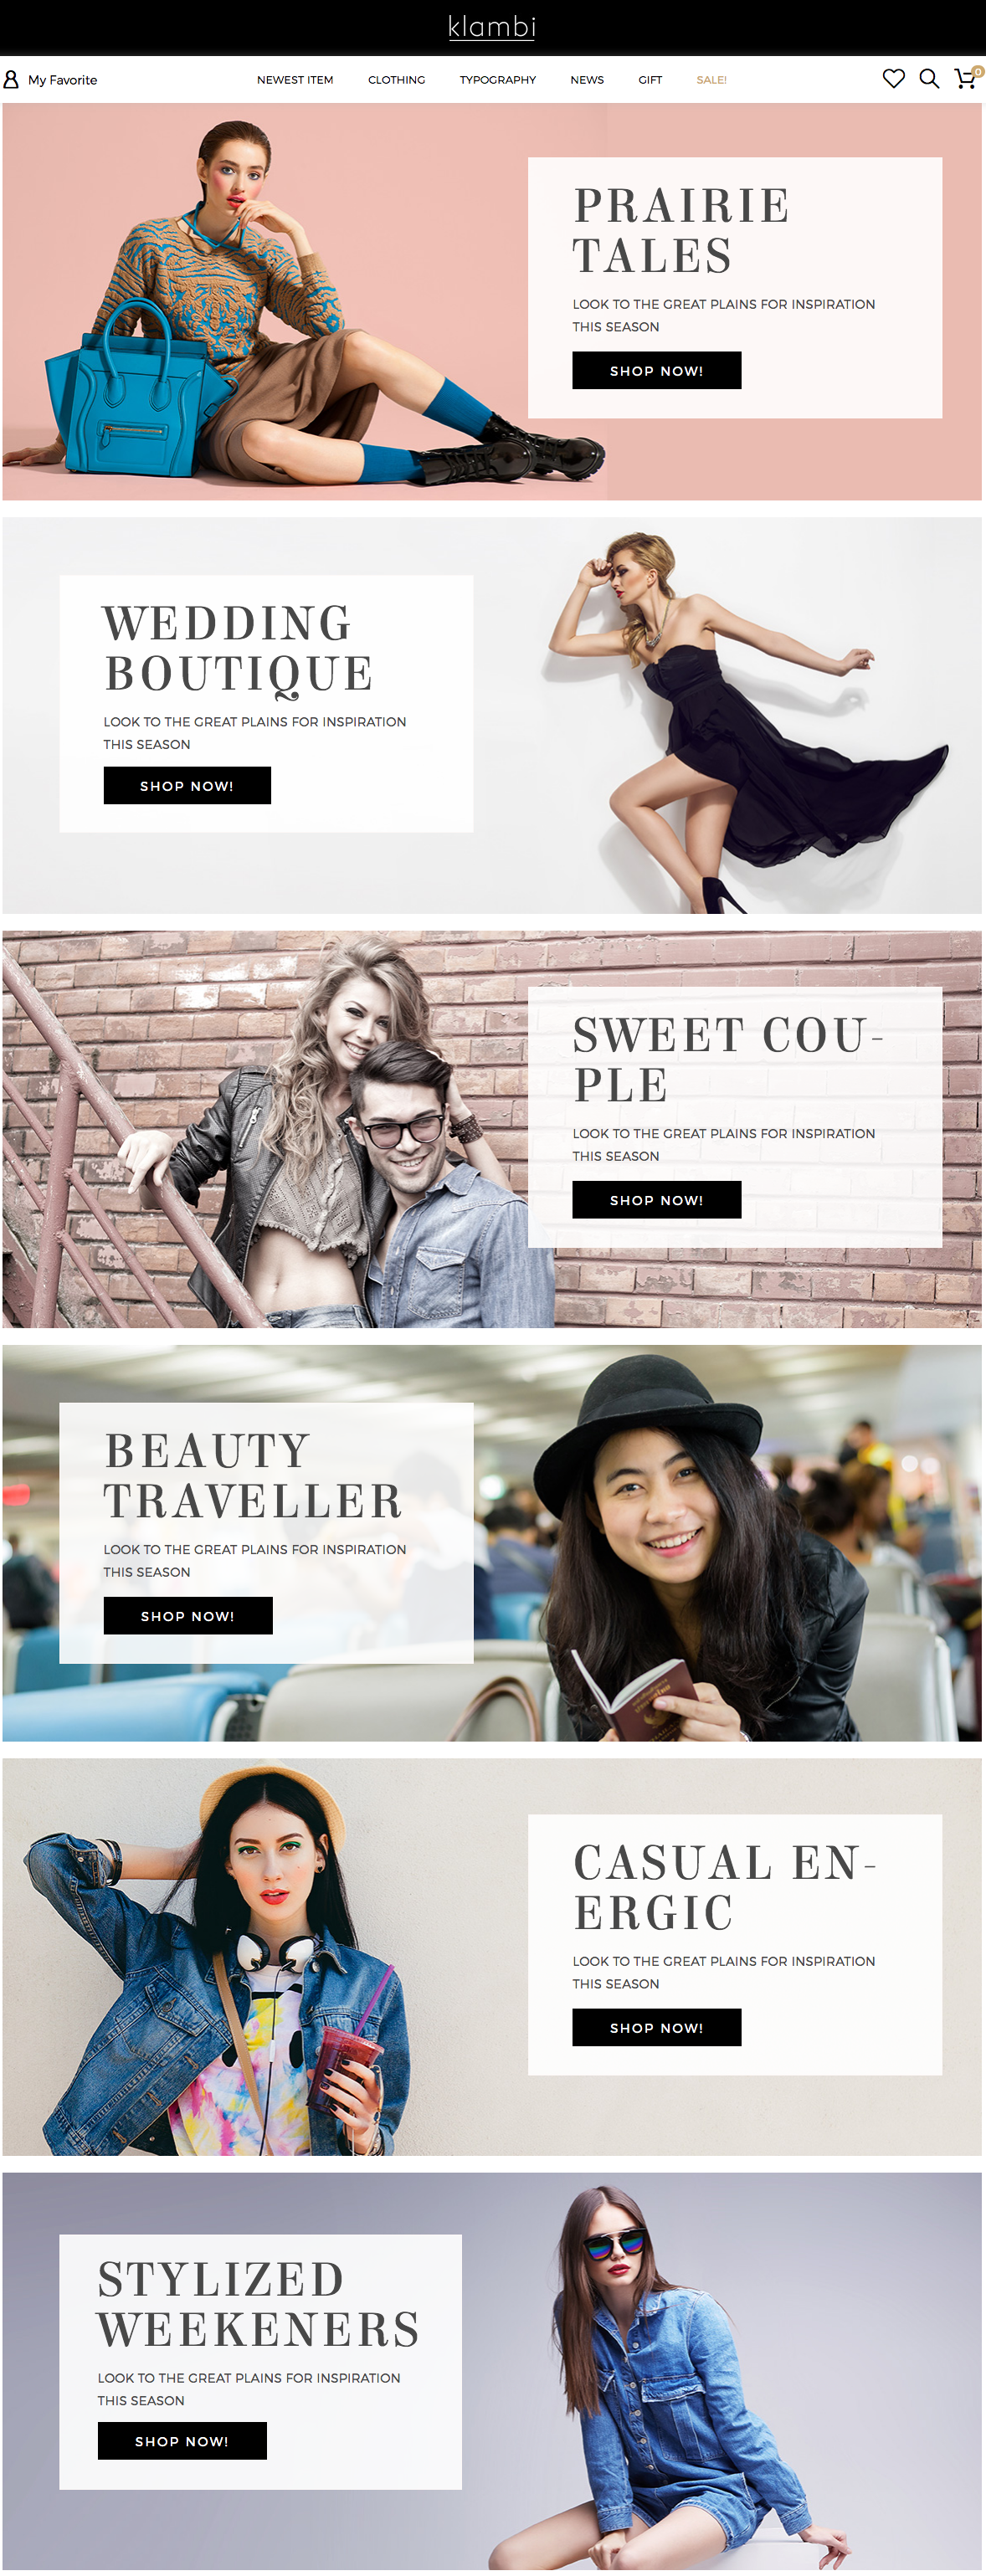 Klambi - tema de WordPress de la tienda de moda de comercio electrónico moderno